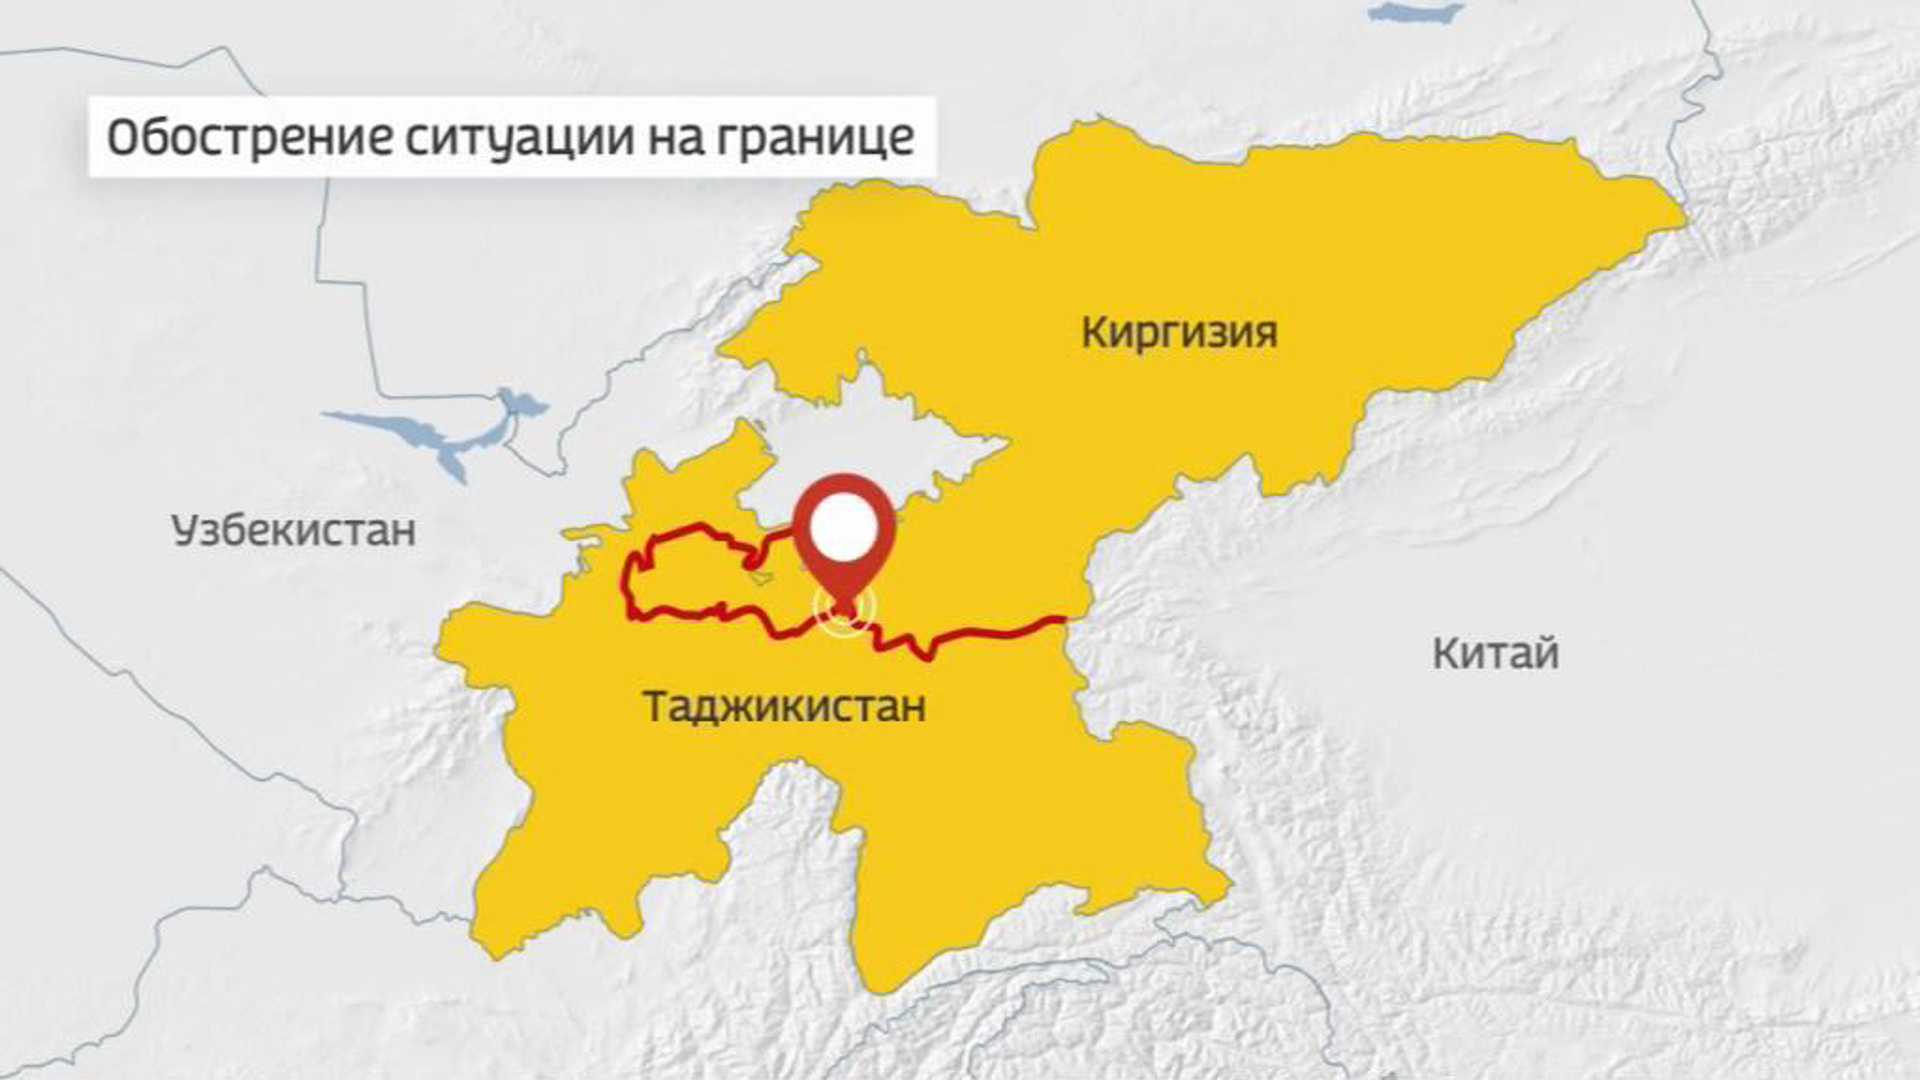 Таджикские территории. Граница Киргизии и Таджикистана на карте. Карта Кыргызстана и Таджикистана. Граница между Киргизией и Таджикистаном на карте. Кыргызстан Таджикистан граница карта.